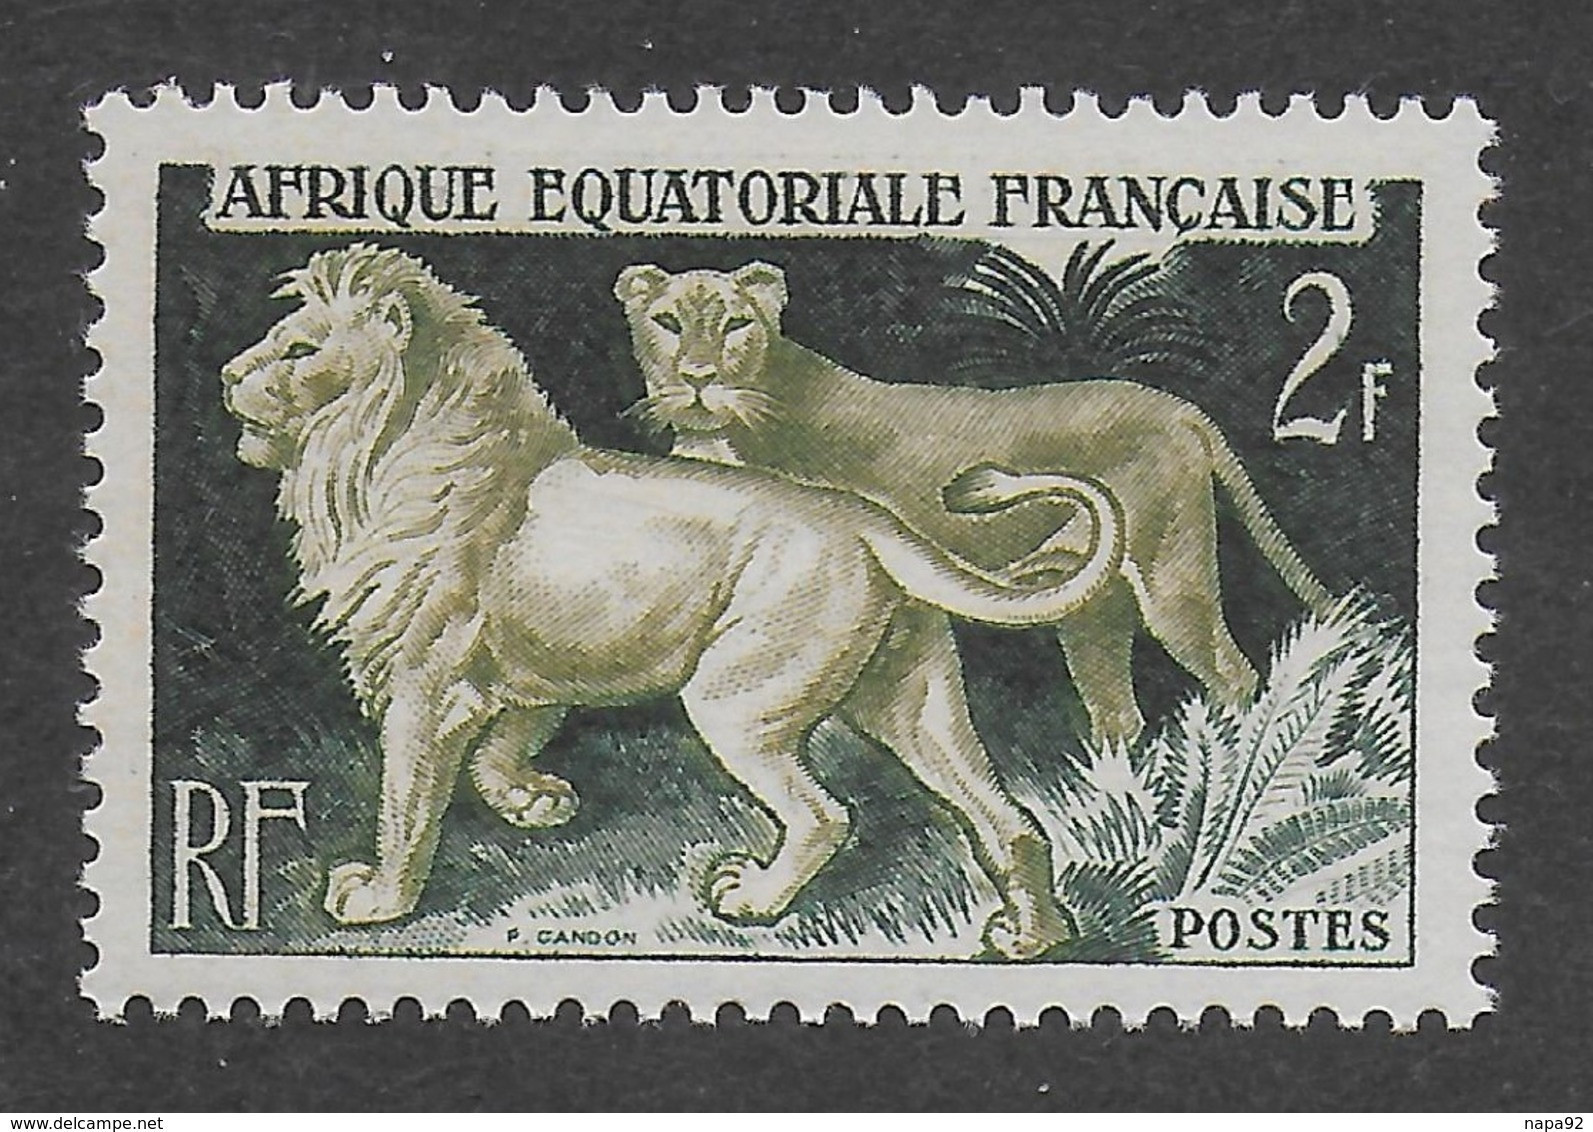 AFRIQUE EQUATORIALE FRANCAISE - AEF - A.E.F. - 1957 - YT 239** - MNH - Neufs